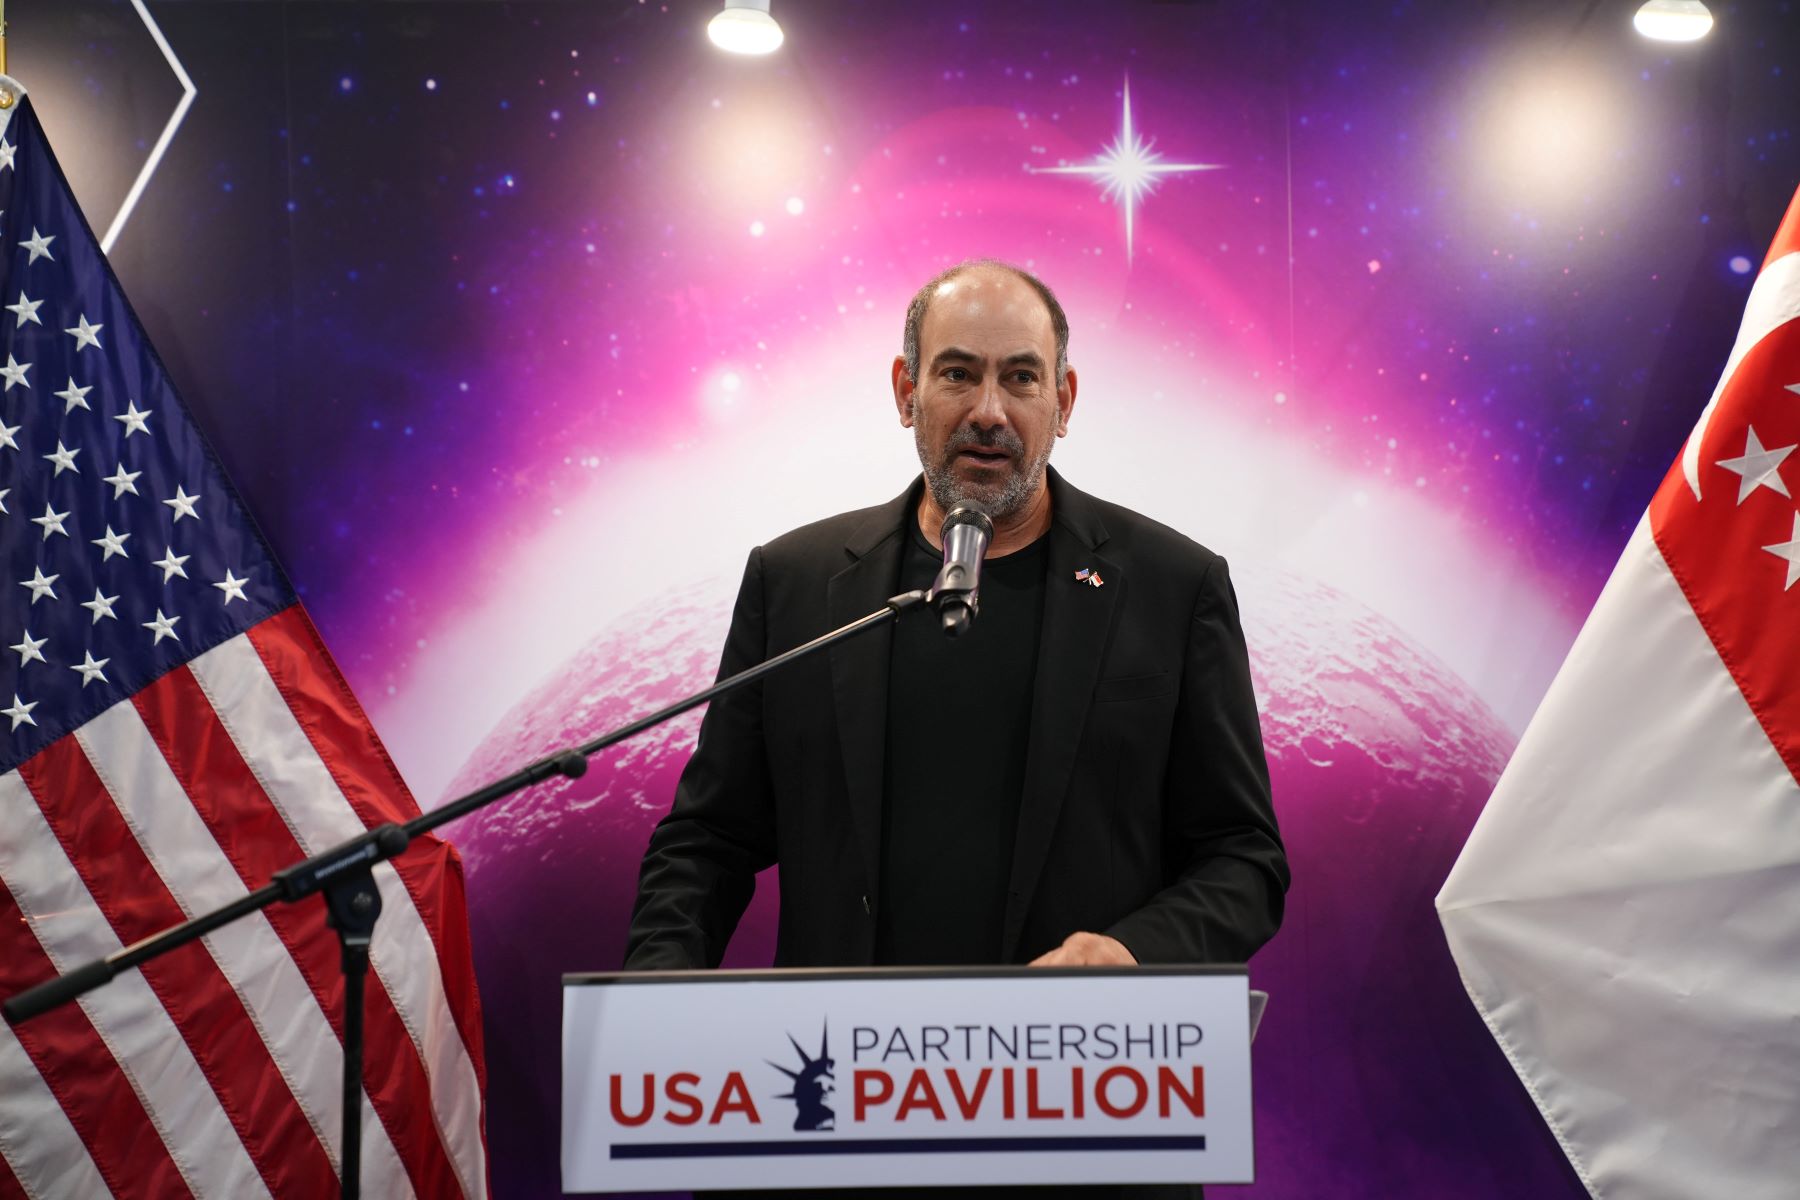 The Honorable Jonathon Kaplan, U.S. Ambassador to Singapore, speaking at the USA Partnership Pavilion Opening Ceremony on Tuesday, 20 February.